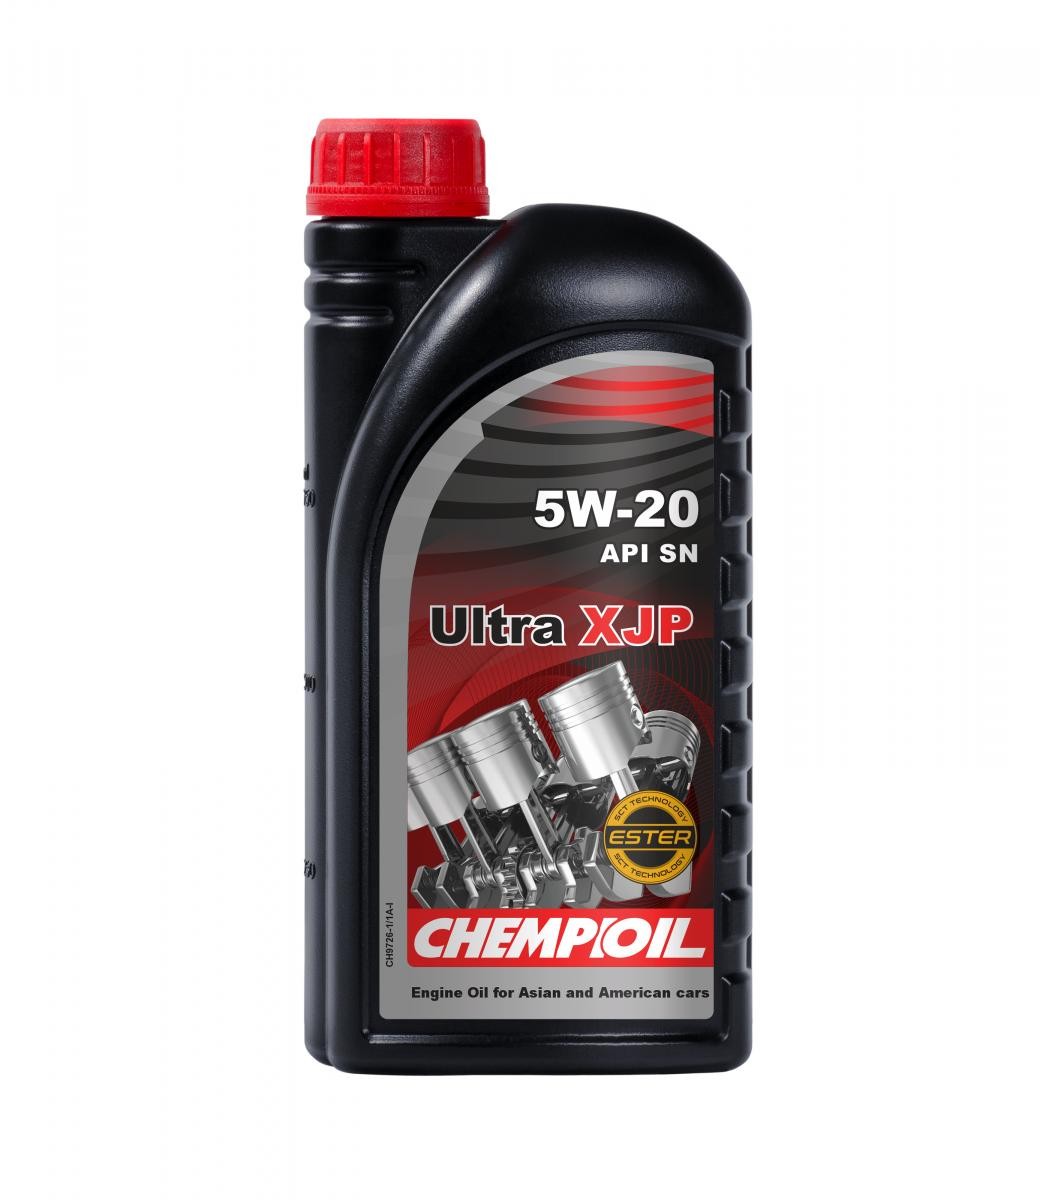 CH9726-1 CHEMPIOIL ULTRA, XJP 5W-20, 1l, Vollsynthetiköl Motoröl CH9726-1 günstig kaufen